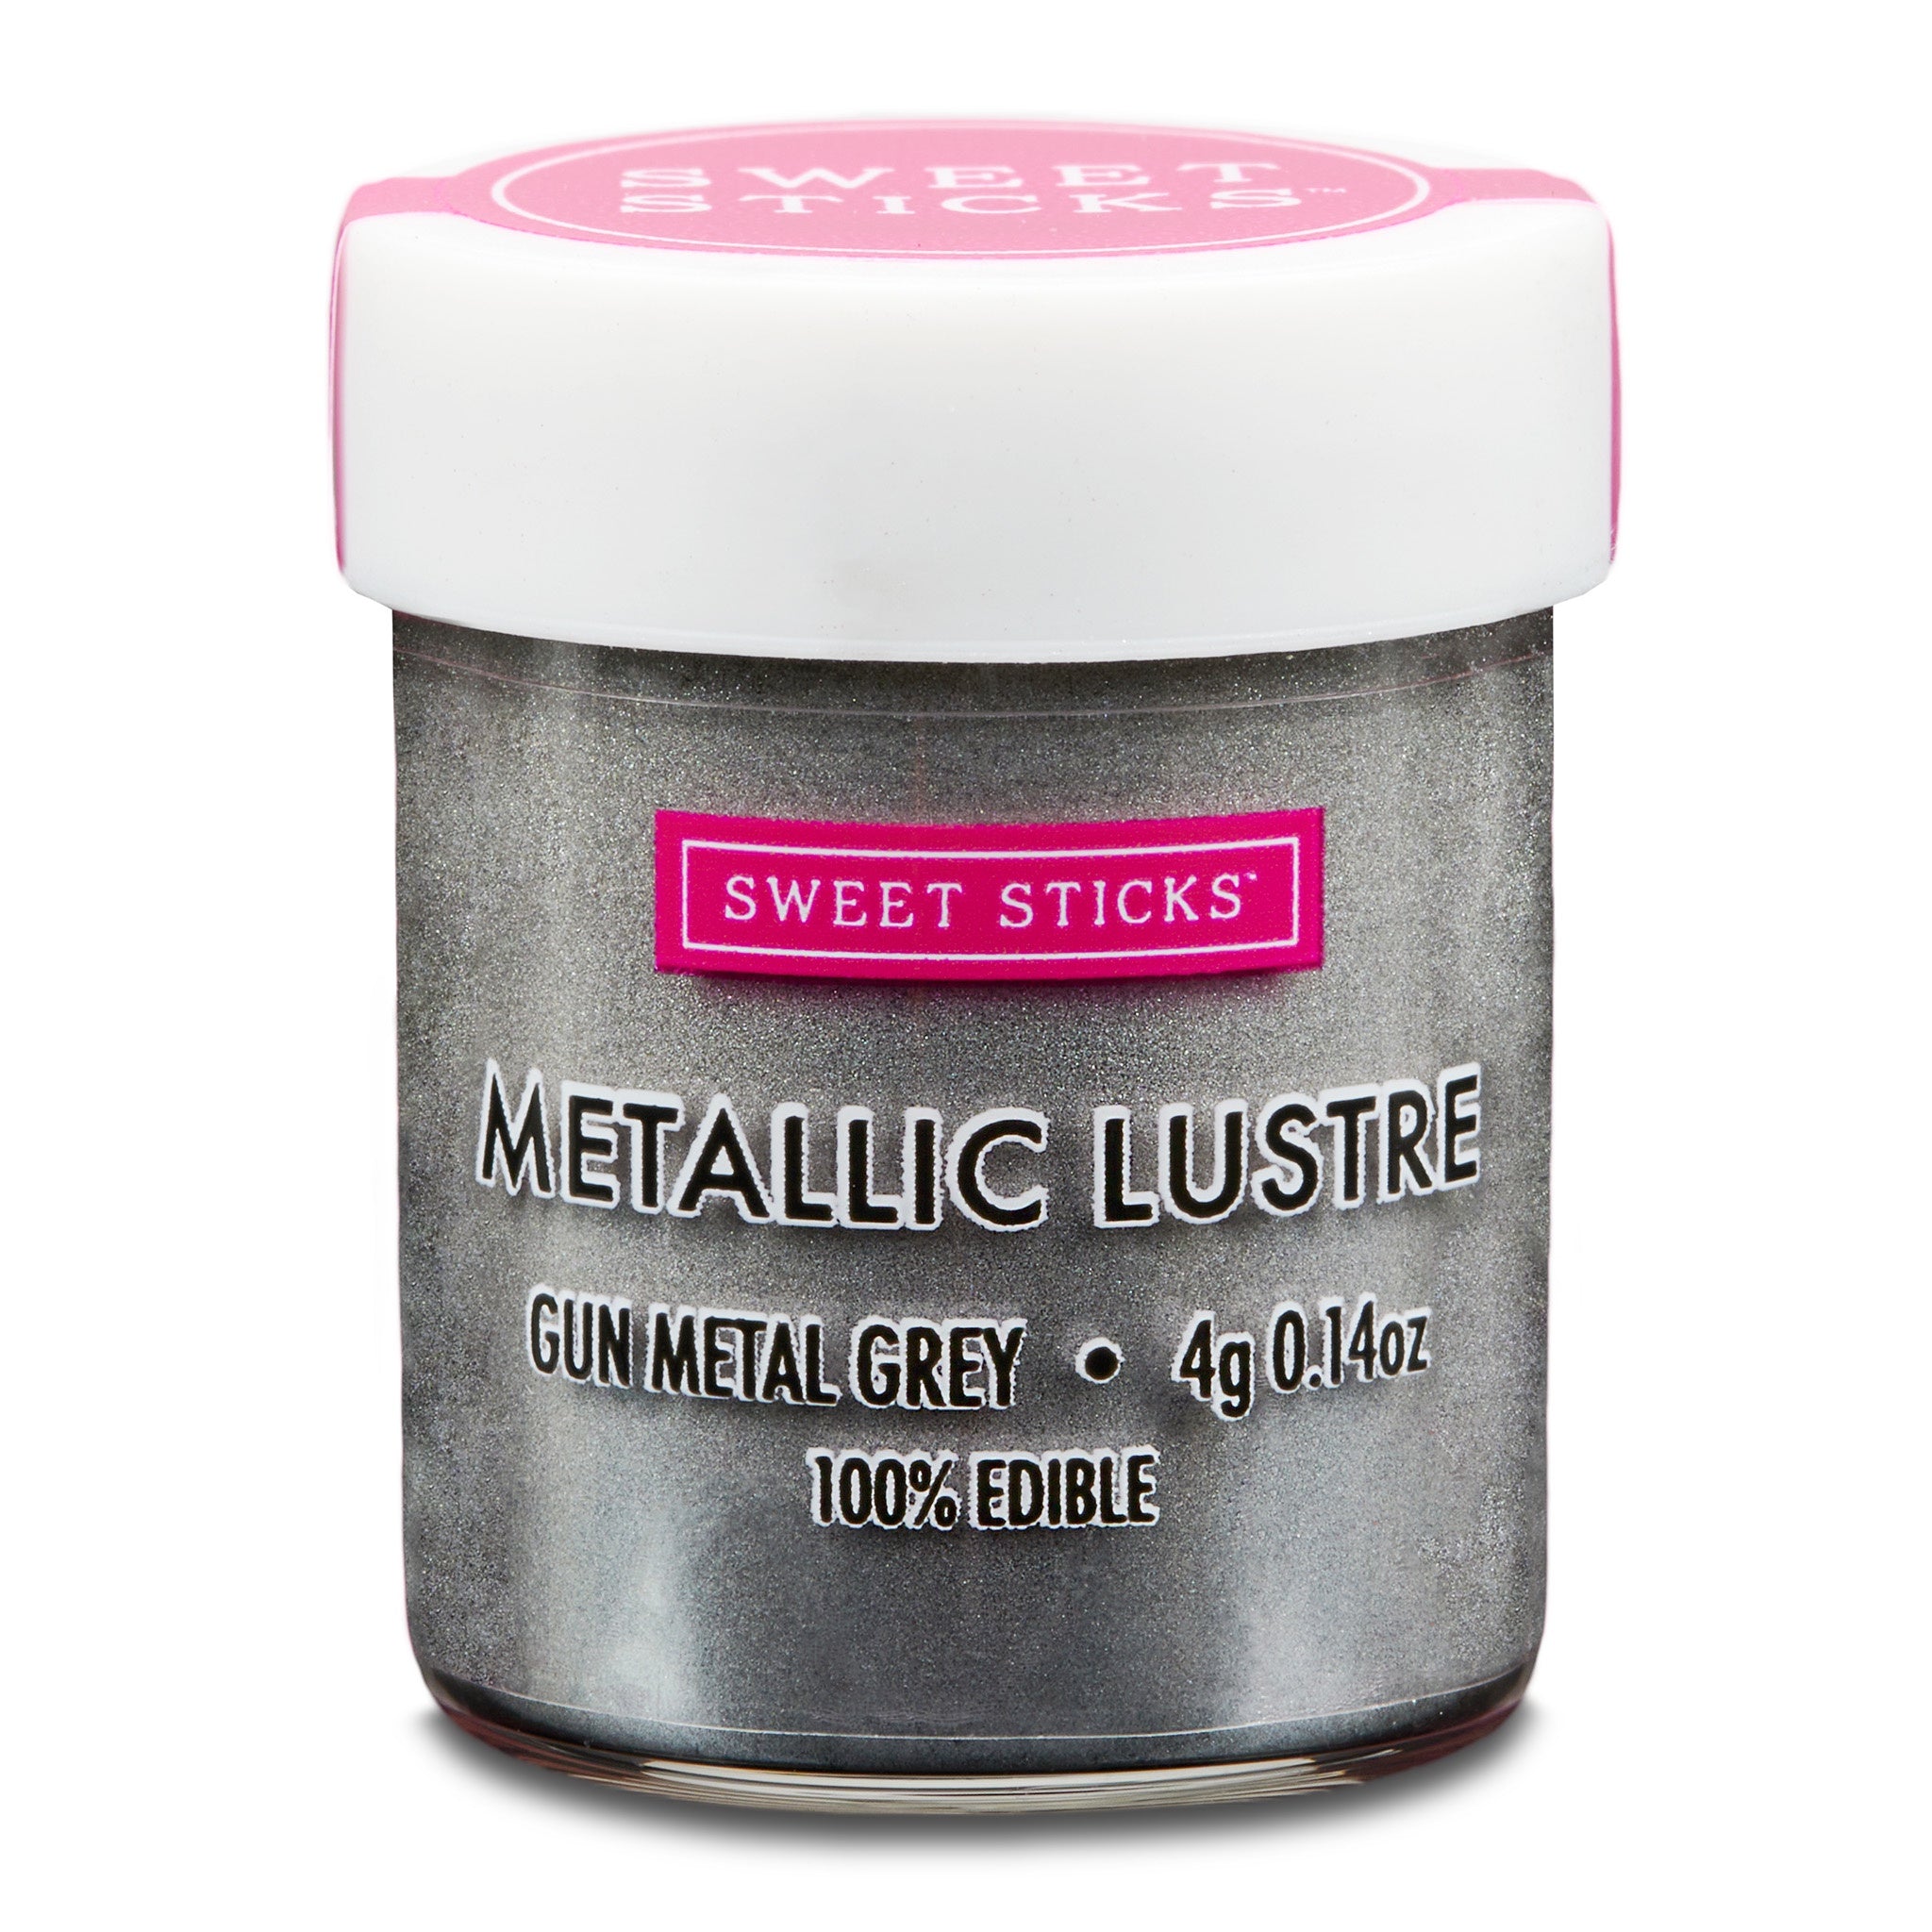 Sweet Sticks Metallic Lustre 4g - Gun Metal Grey